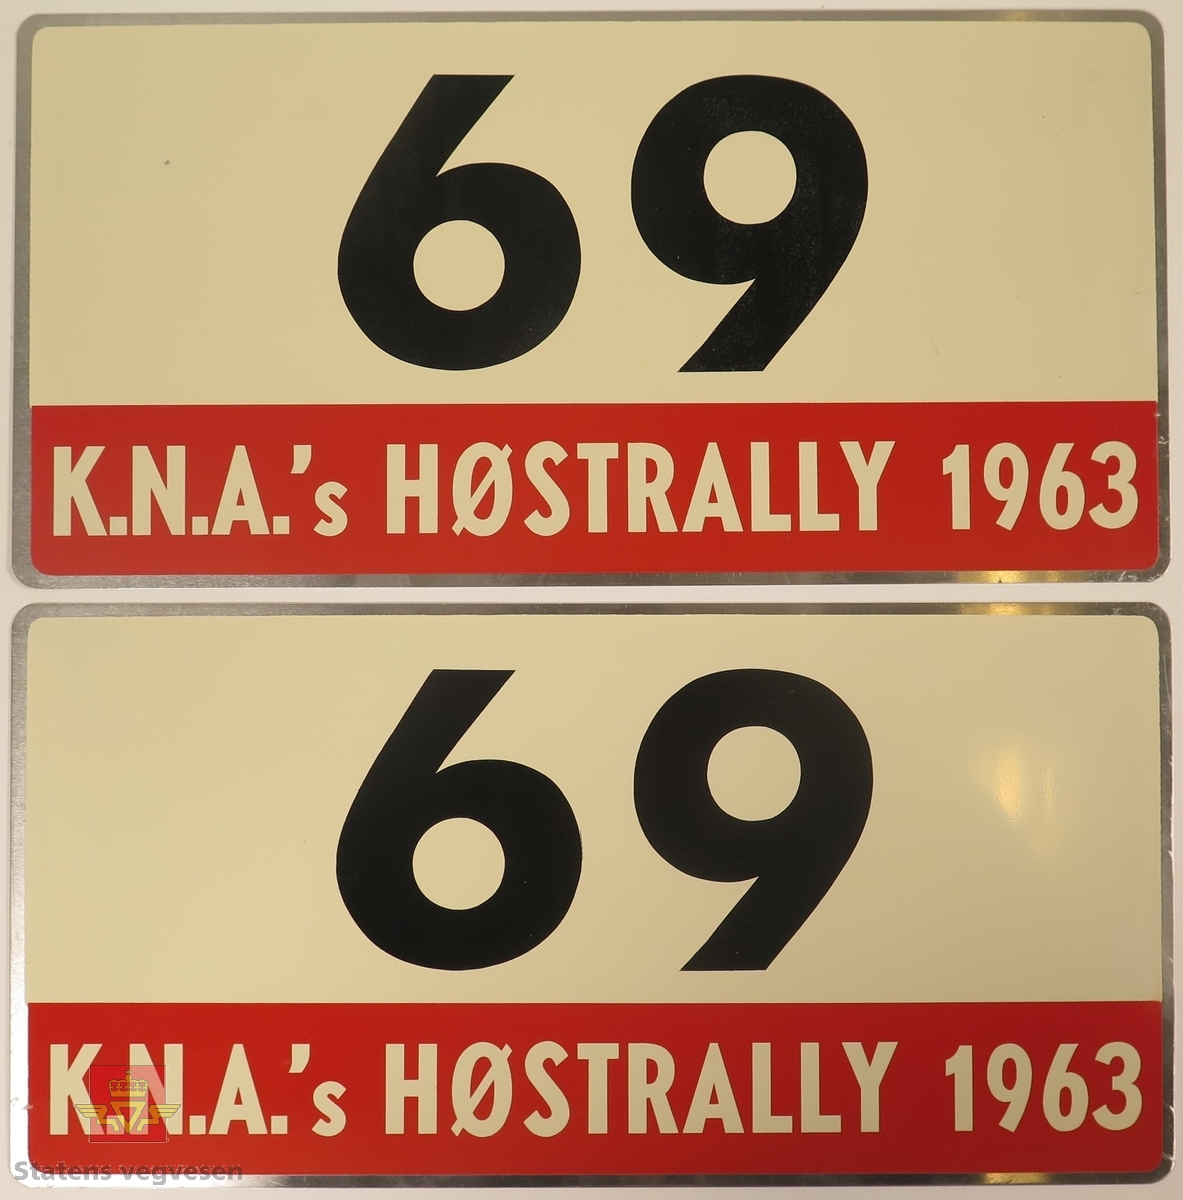 Hovedsakelig hvite metallskilt med et mindre rødt markeringsområde. Grupperingen med skilt har også nummeret "69" påført seg, dette er en indikasjon på deltakernummer.
Påskrift: K.N.A.'s HØSTRALLY 1963